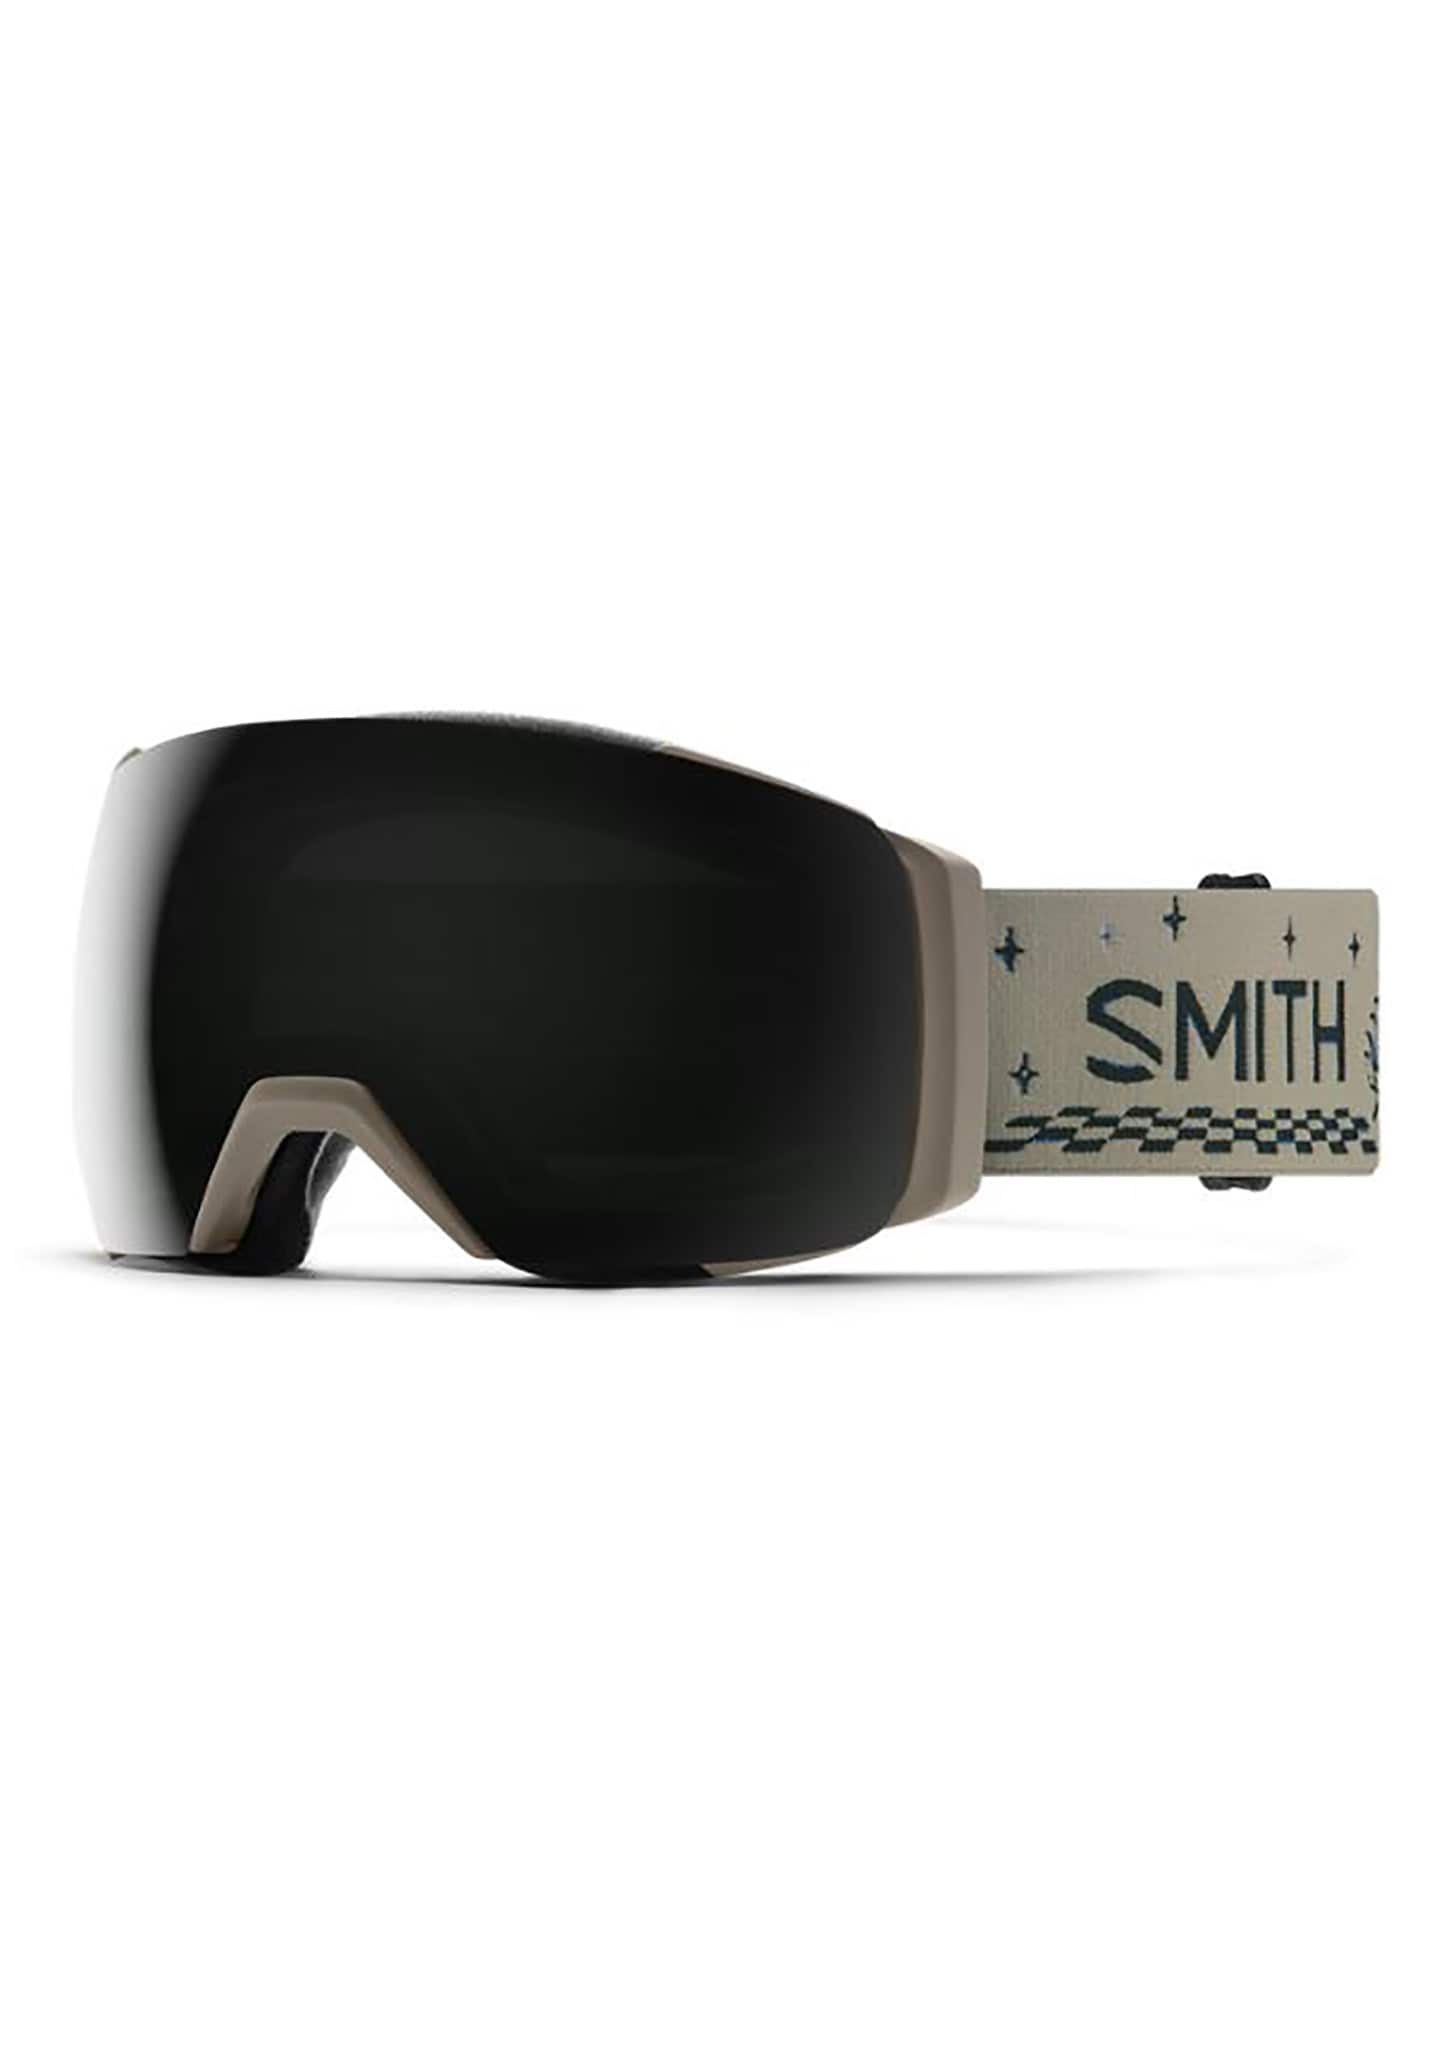 Smith I/O Mag XL Snowboardbrillen grau/schwarz/weiß One Size